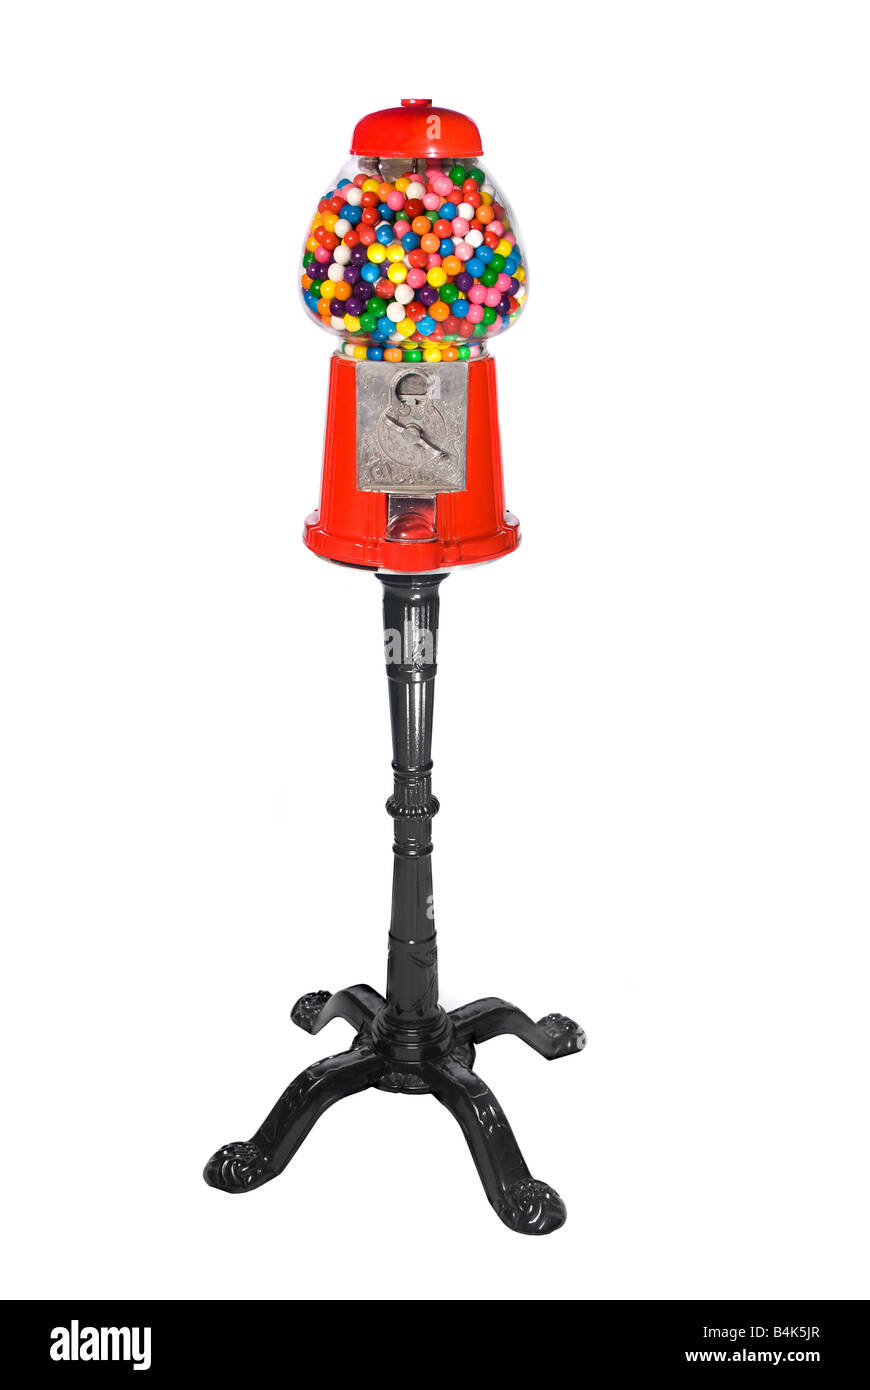 Gumball distributore riempito con colorati gumballs isolato su bianco Foto Stock